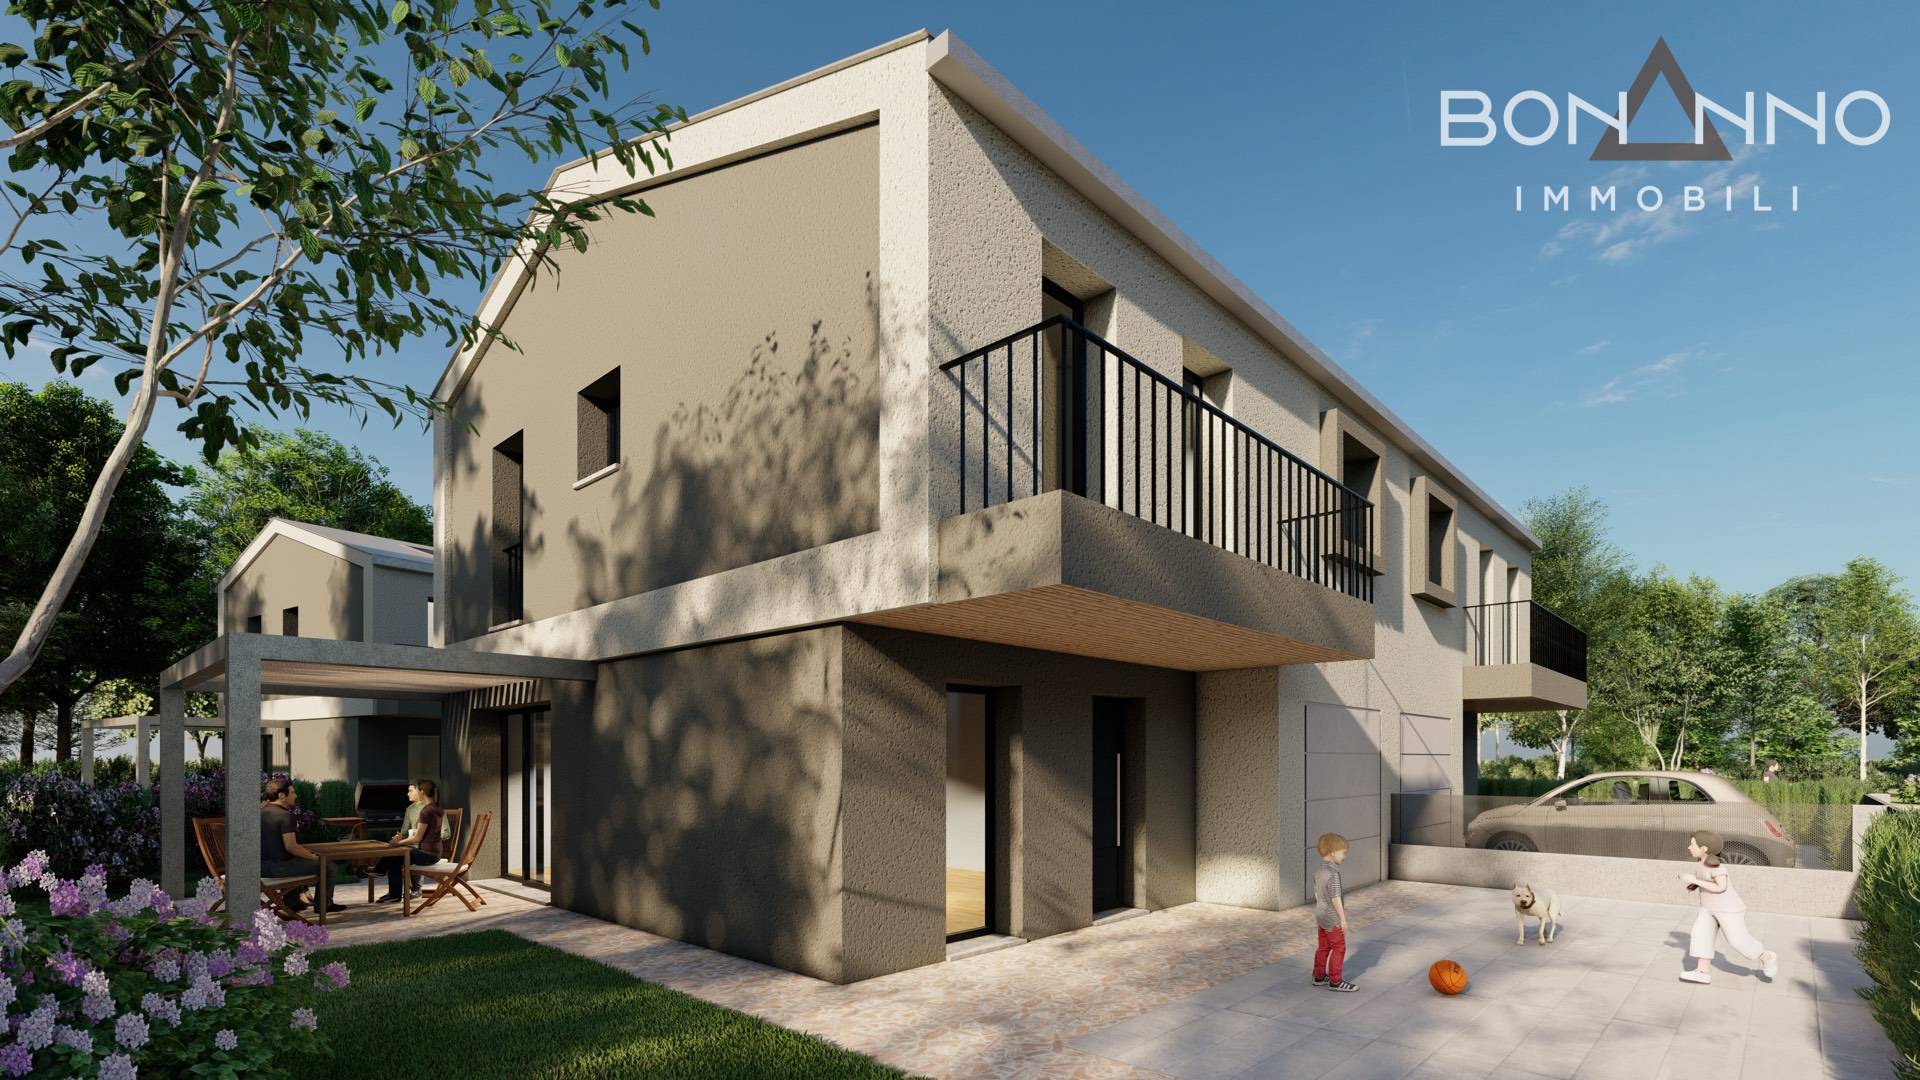 Villa Bifamiliare in vendita a Morgano, 4 locali, zona ere, prezzo € 320.000 | PortaleAgenzieImmobiliari.it